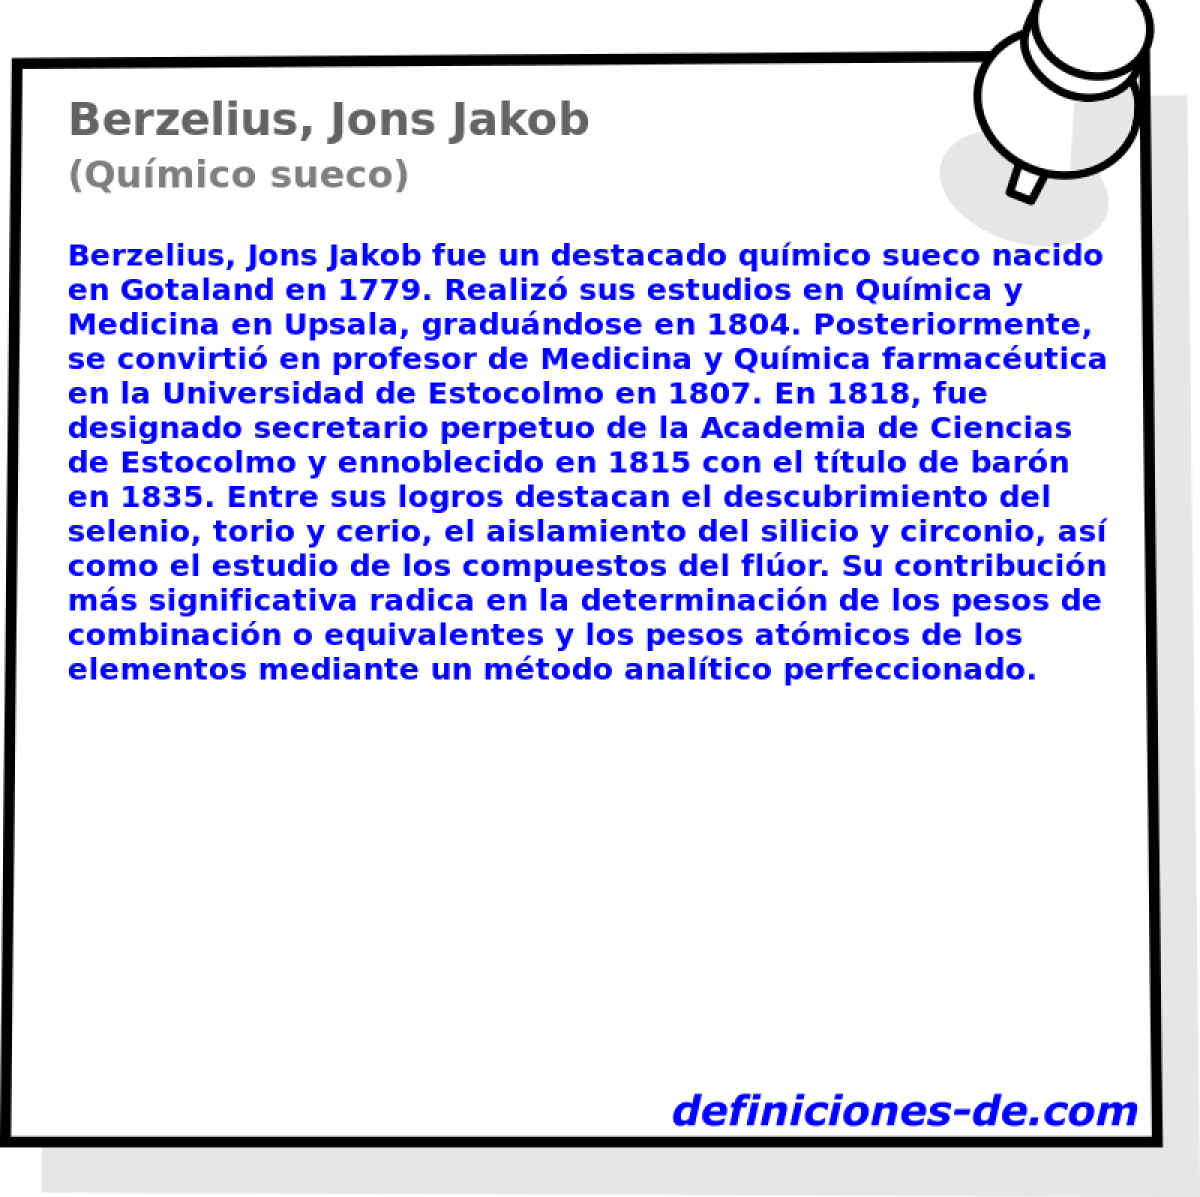 Berzelius, Jons Jakob (Qumico sueco)